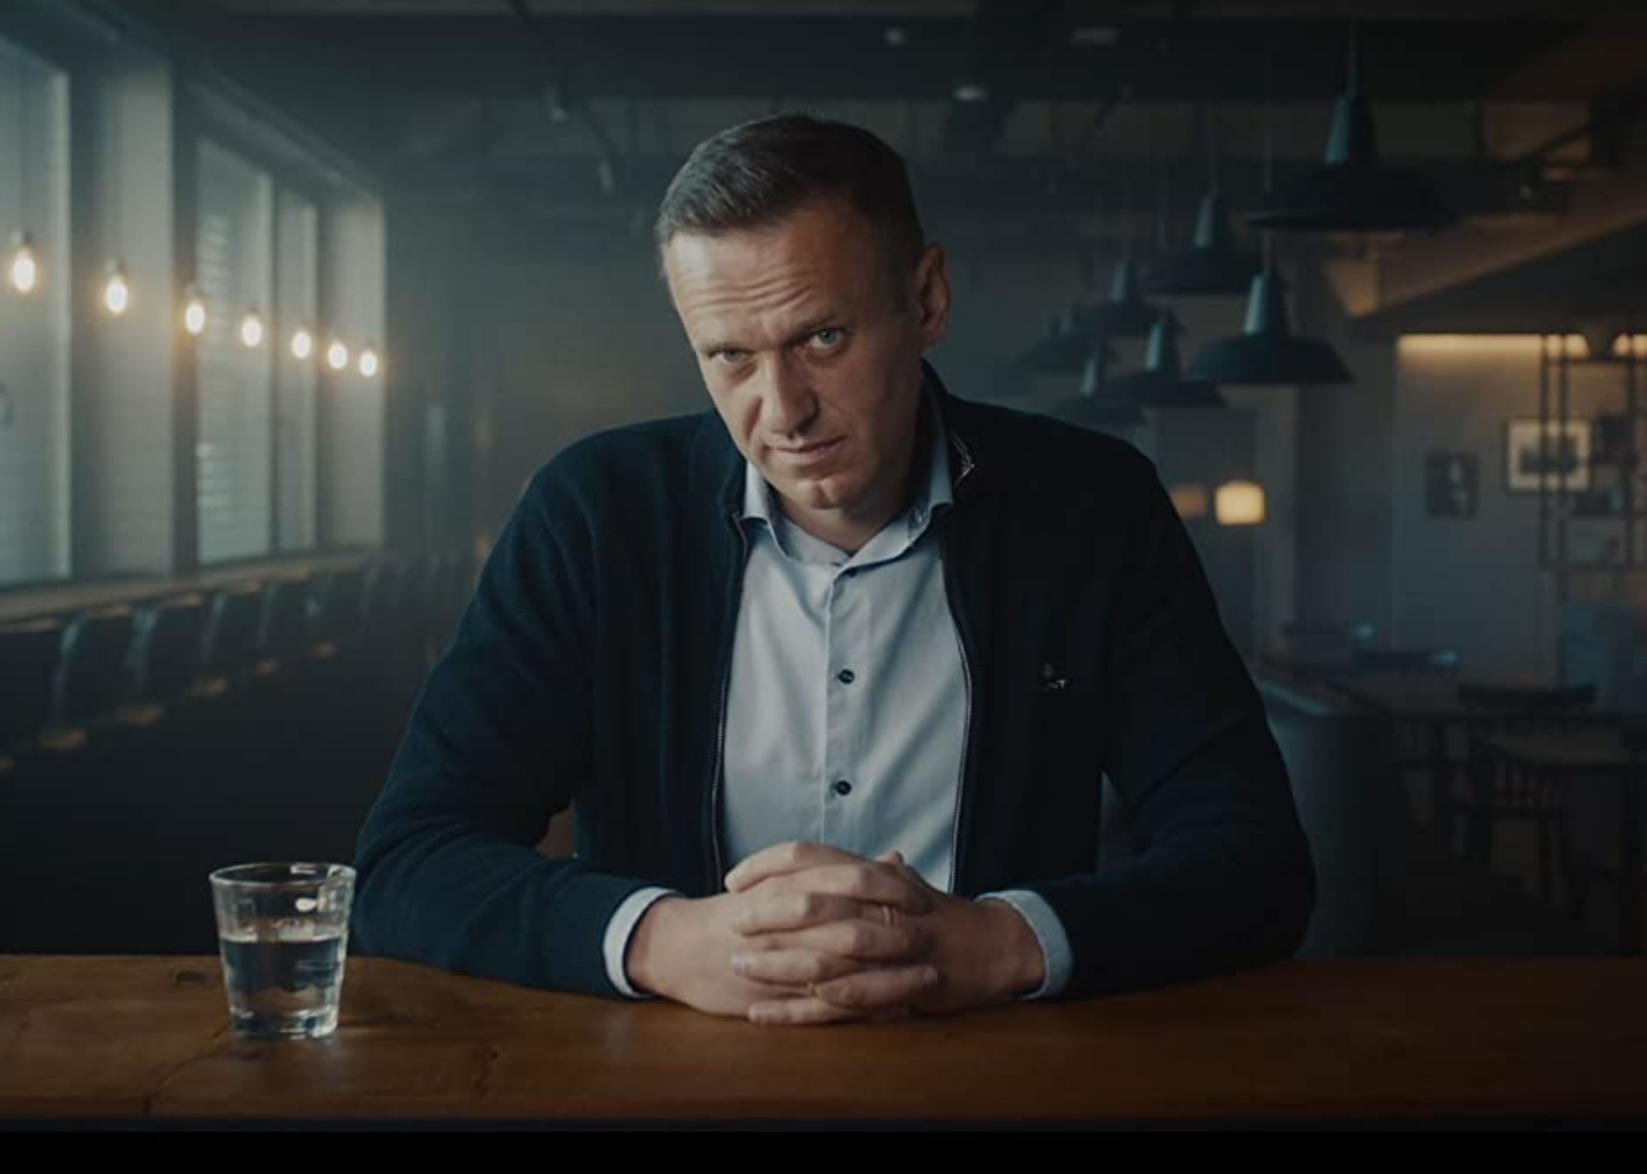 Alexei Navalny in a scene from "Navalny".